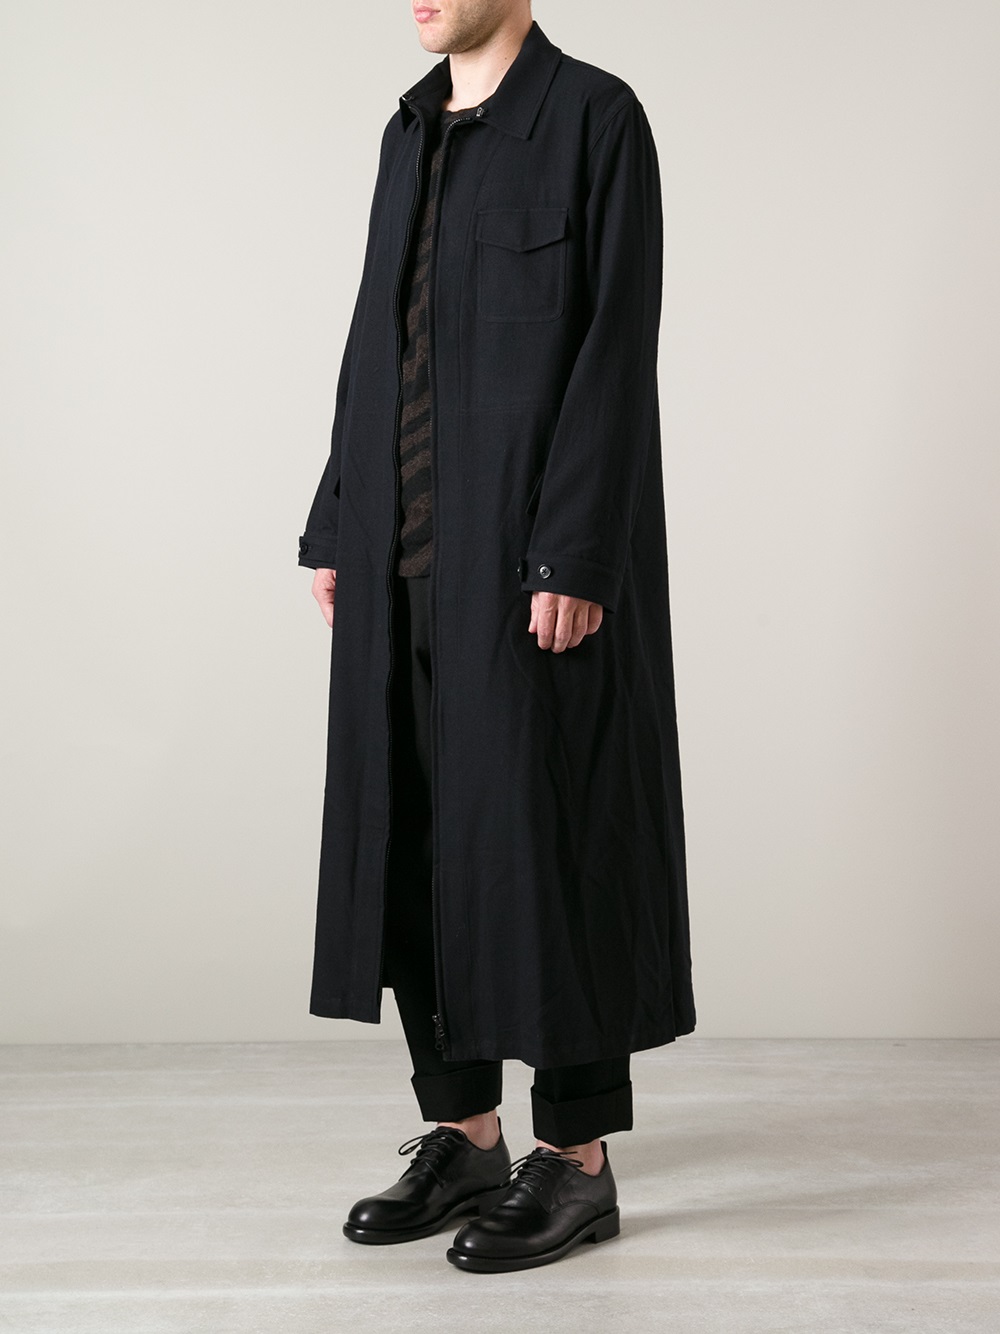 Lyst - Yohji Yamamoto Long Unlined Jacket in Black for Men